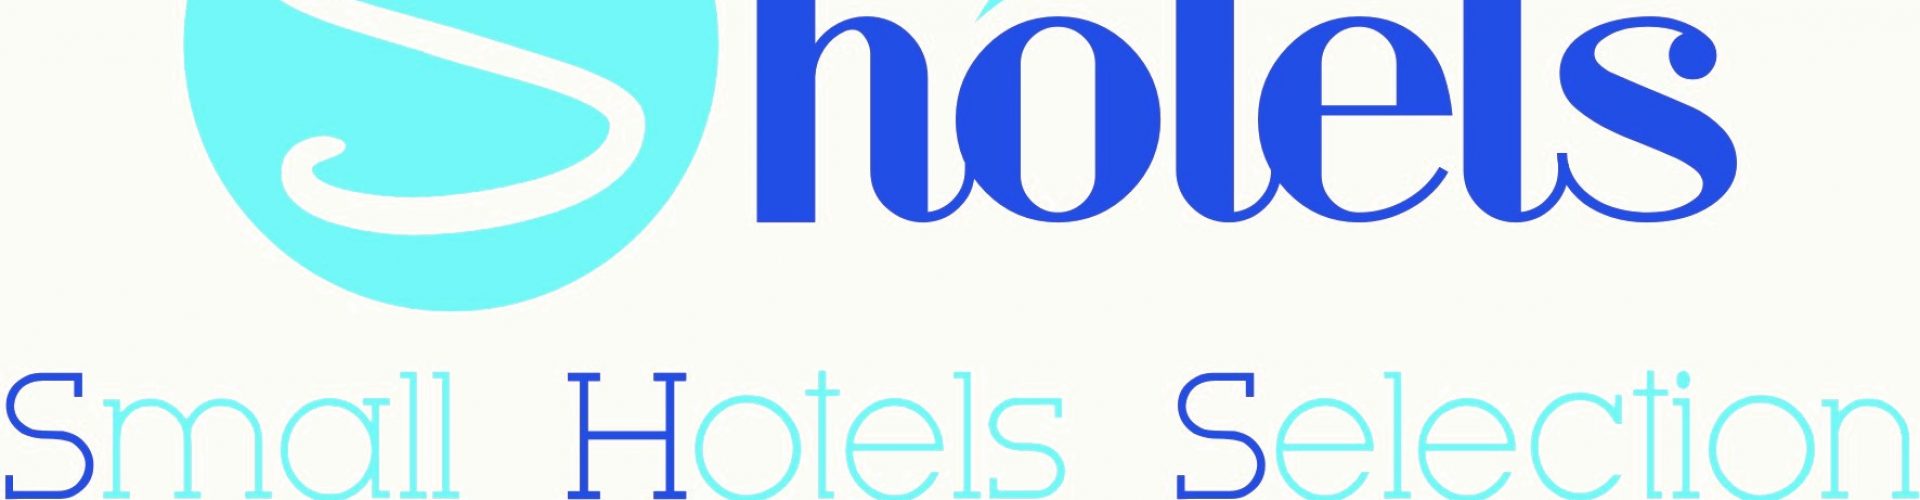 shotels logo convert